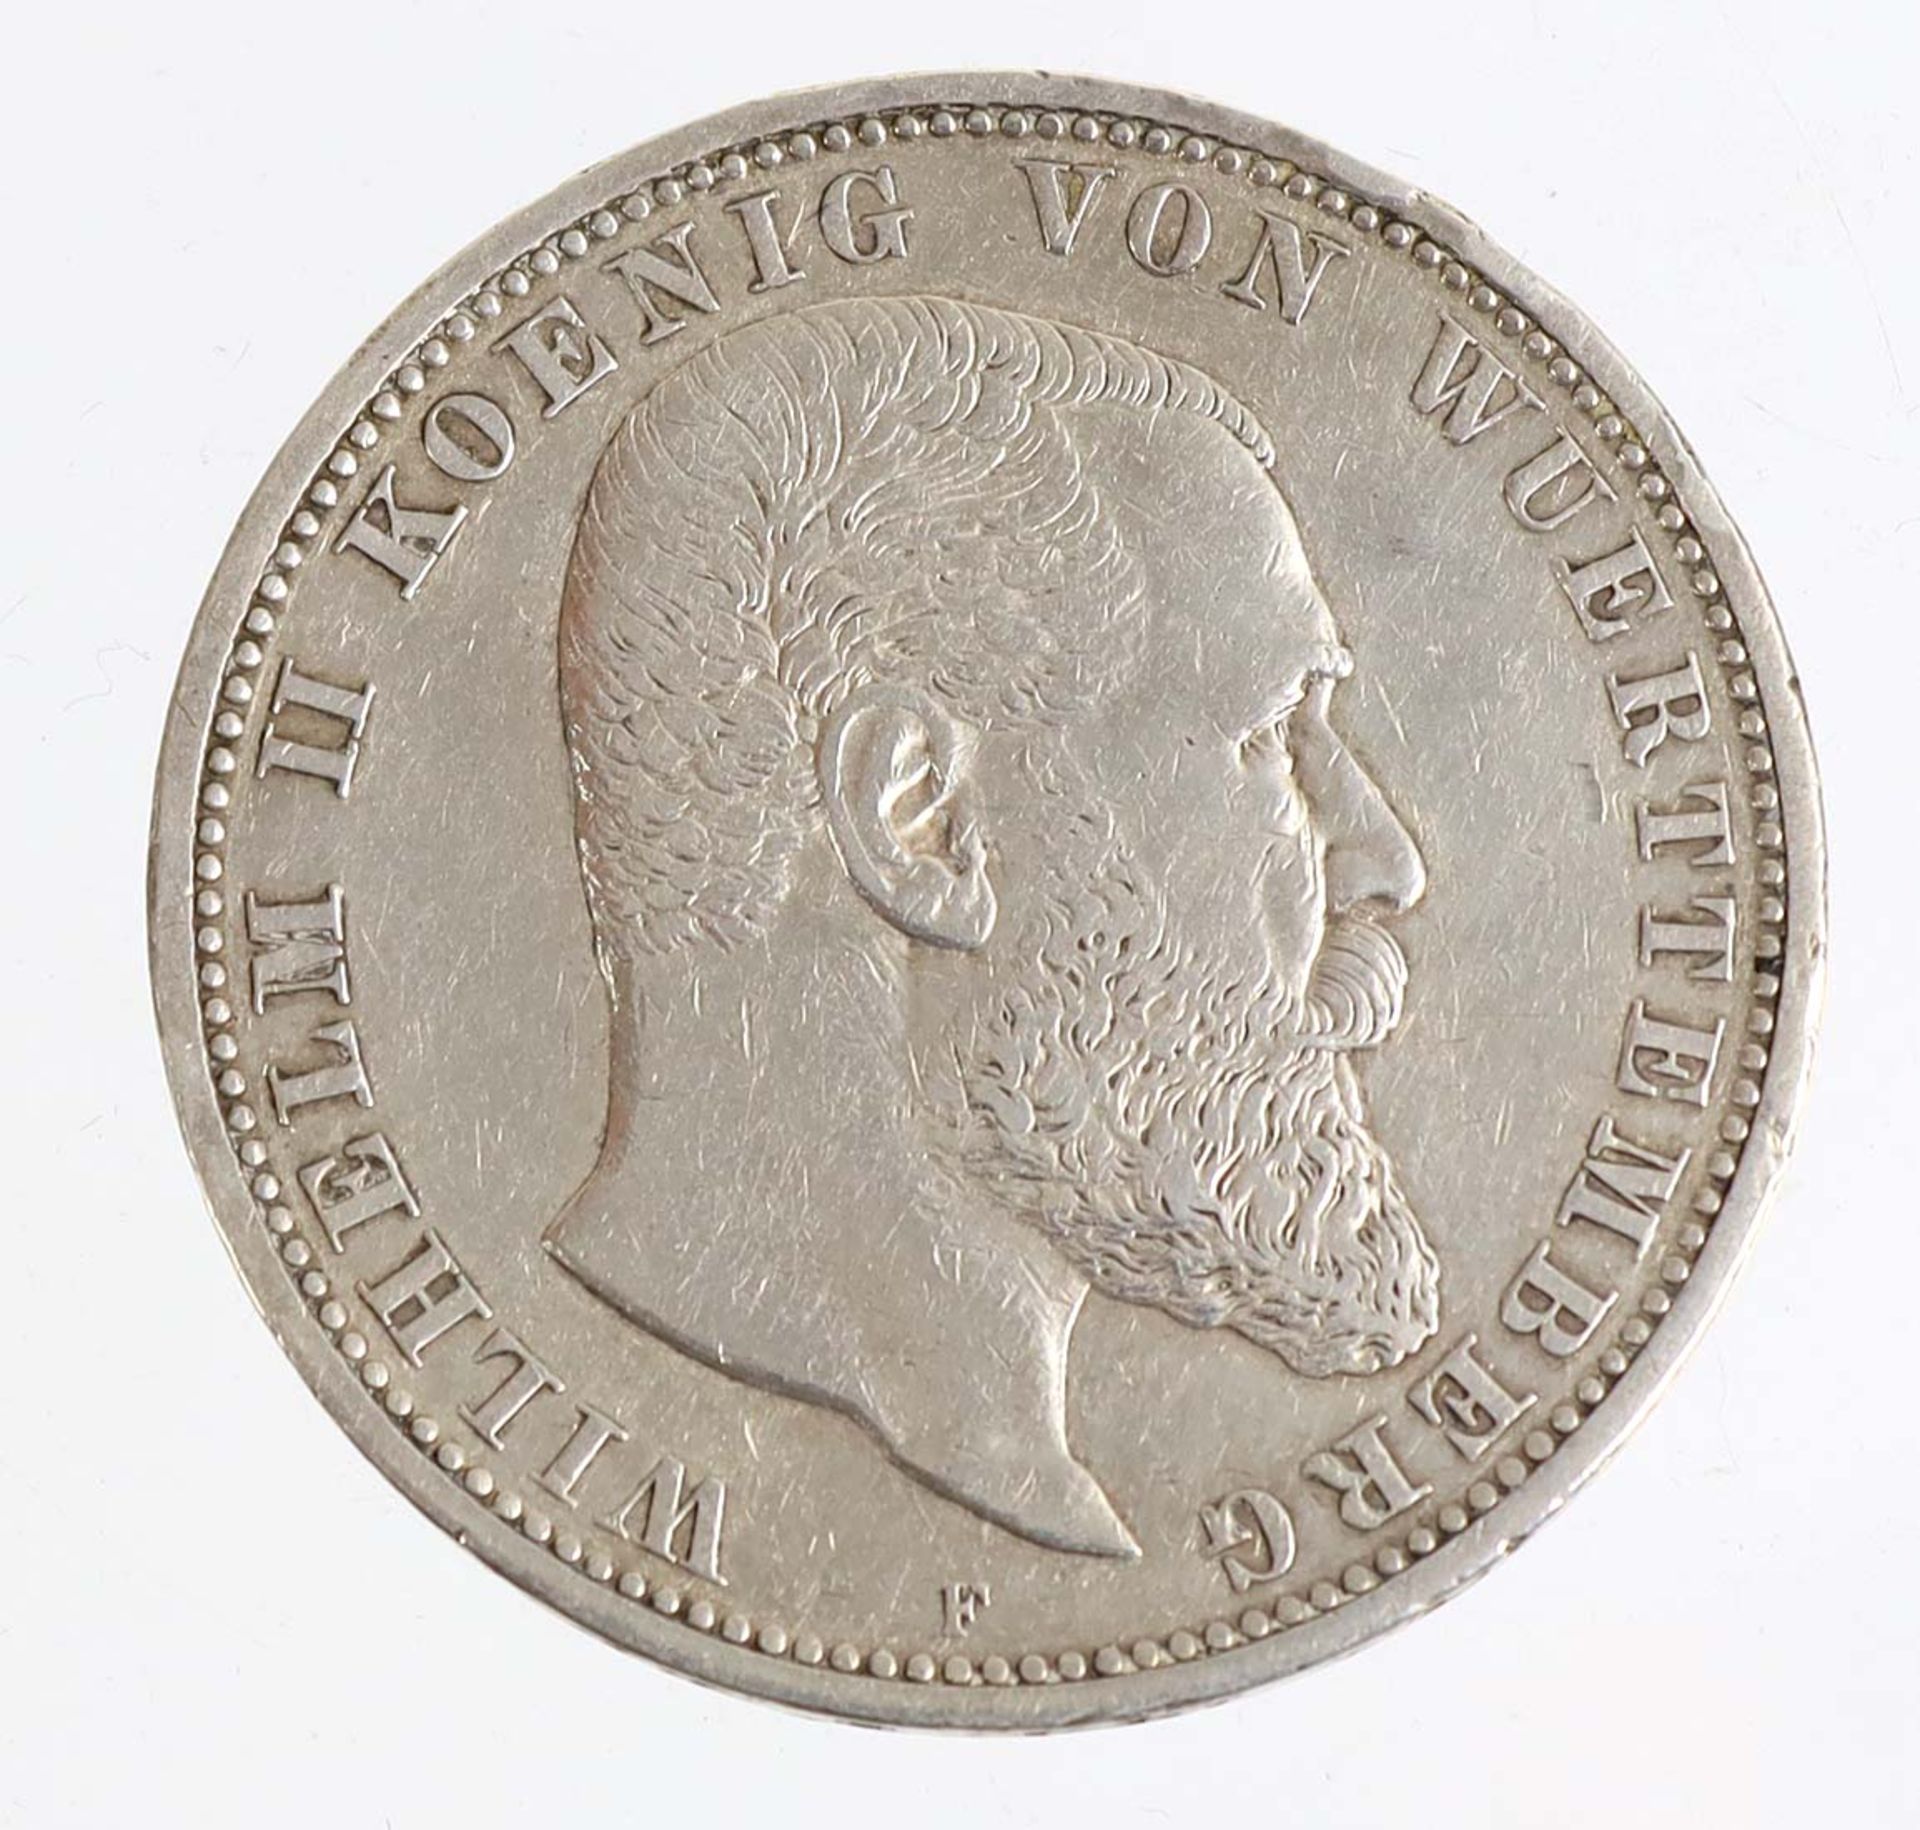 5 Mark Wilhelm II Wuerttemberg 1900 FSilbermünze Fünf Mark Deutsches Reich 1900, so